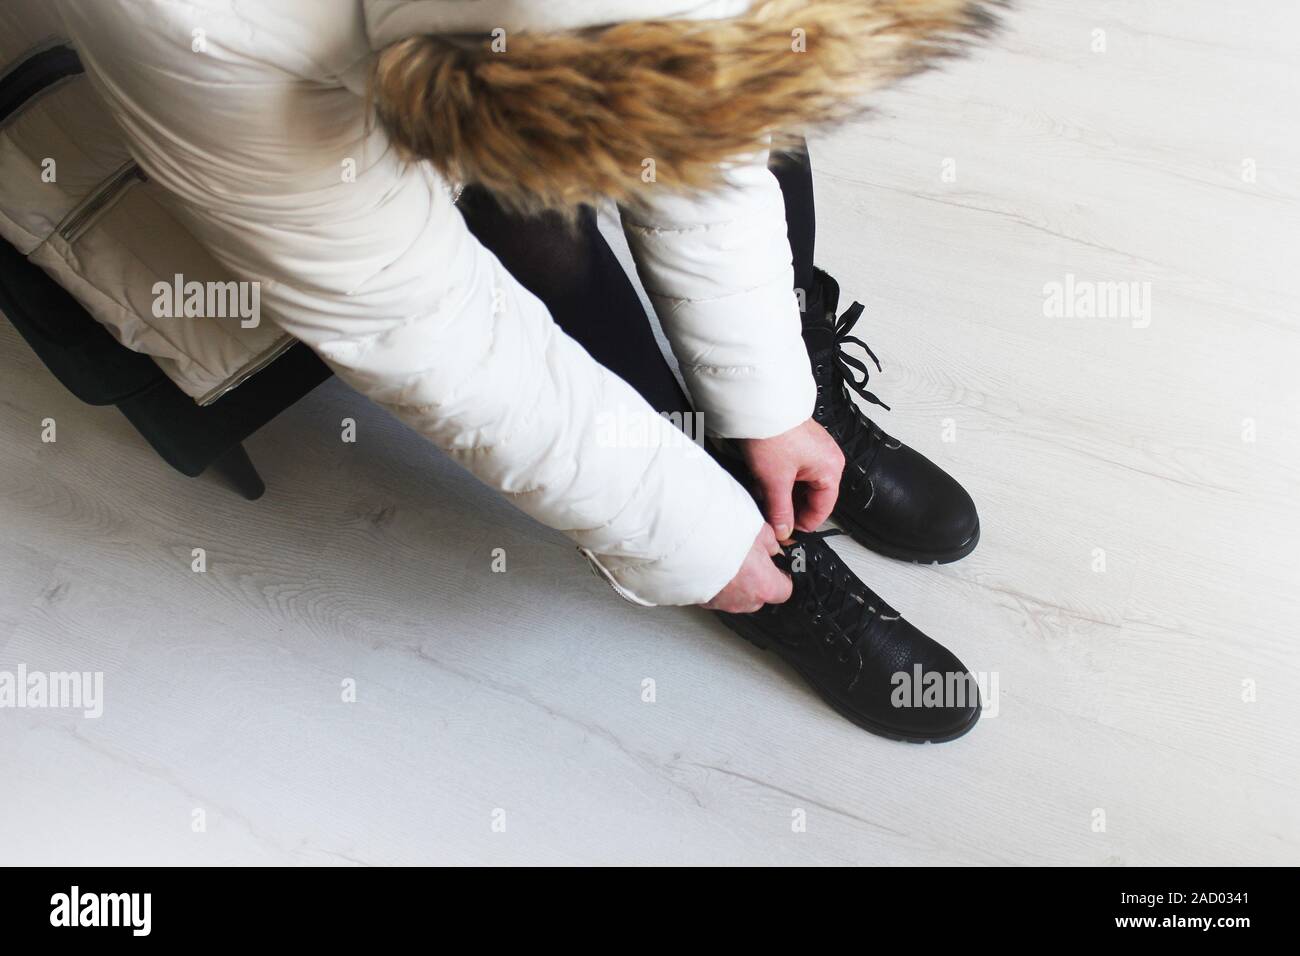 Girl met des bottes dans un magasin de chaussures. Démonstration de bottes pour femmes. L'achat des chaussures de saison Banque D'Images